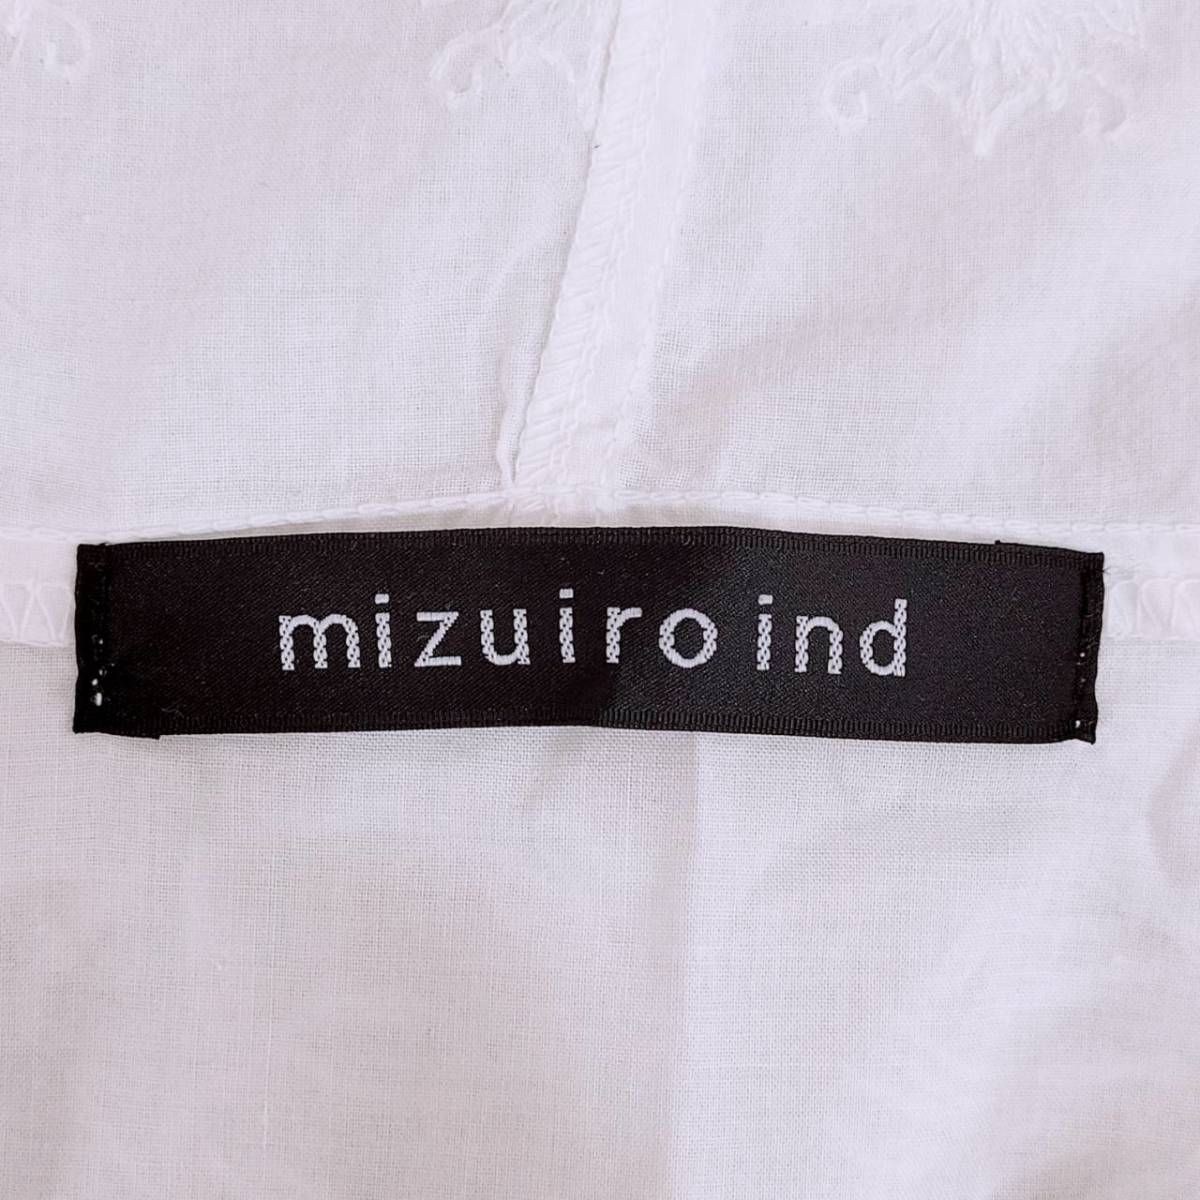 レディースF mizuiro ind ノースリーブシャツ 白 ホワイト カジュアル シンプル 柄模様 ミズイロインド 【14058】